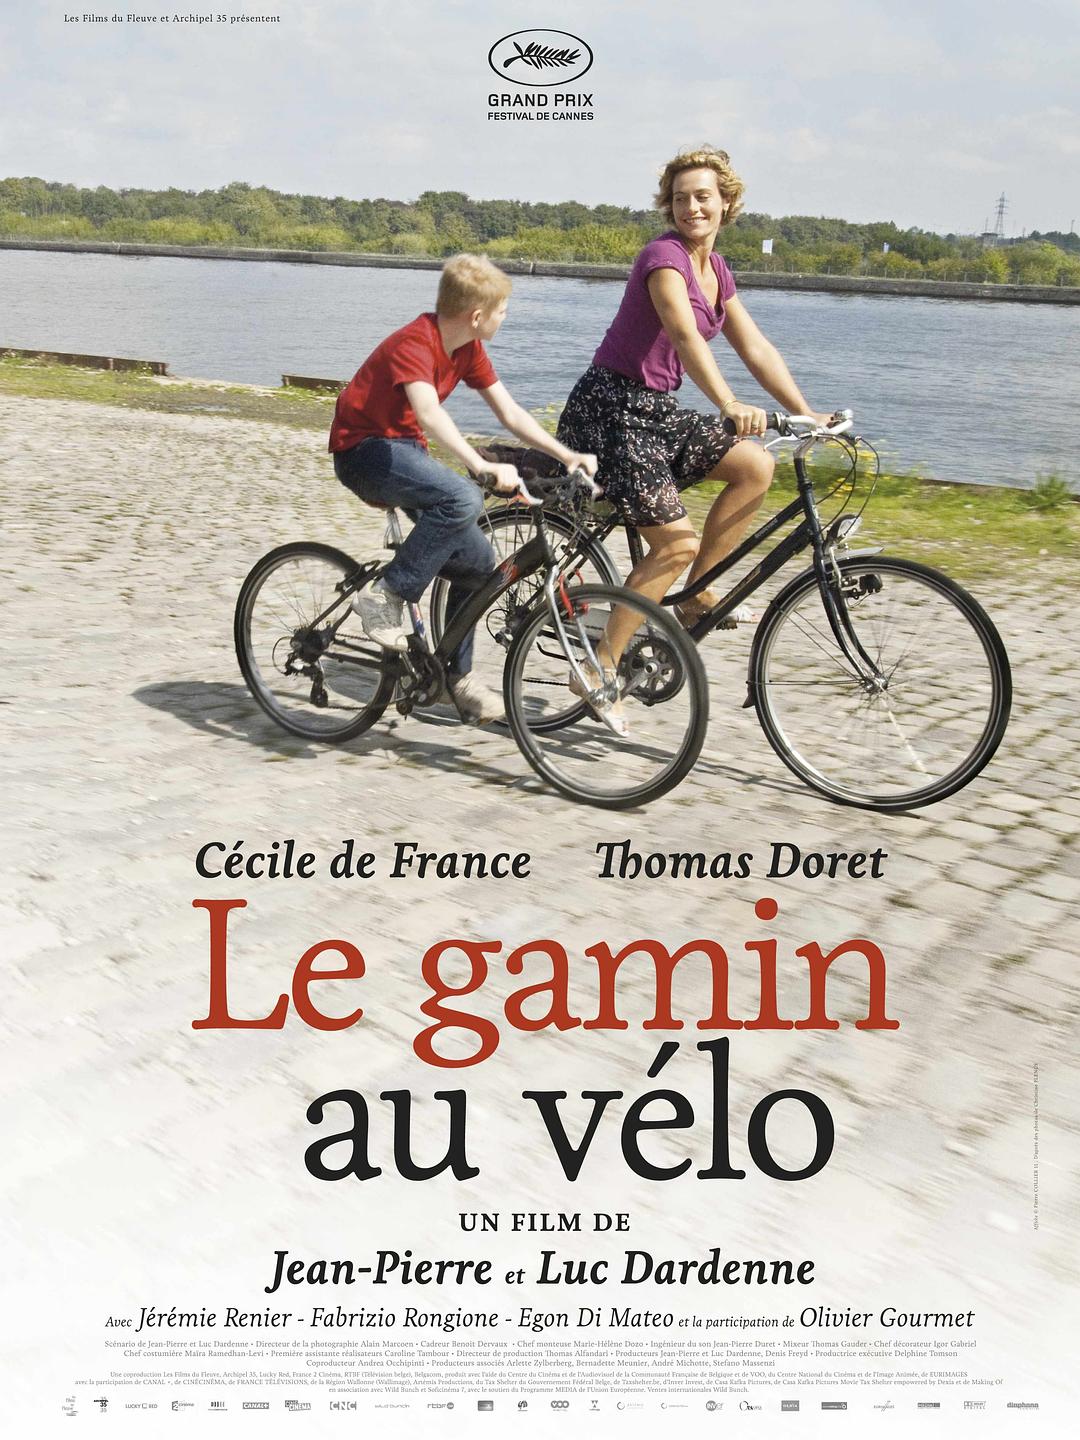 单车少年 蓝光原盘下载+高清MKV版/骑单车的男孩(台) / 单车男孩(港) / 骑脚踏车的小男生 / Boy with a Bike / Set Me Free / The Kid with a Bike 2011 Le gamin au vélo 41.0G